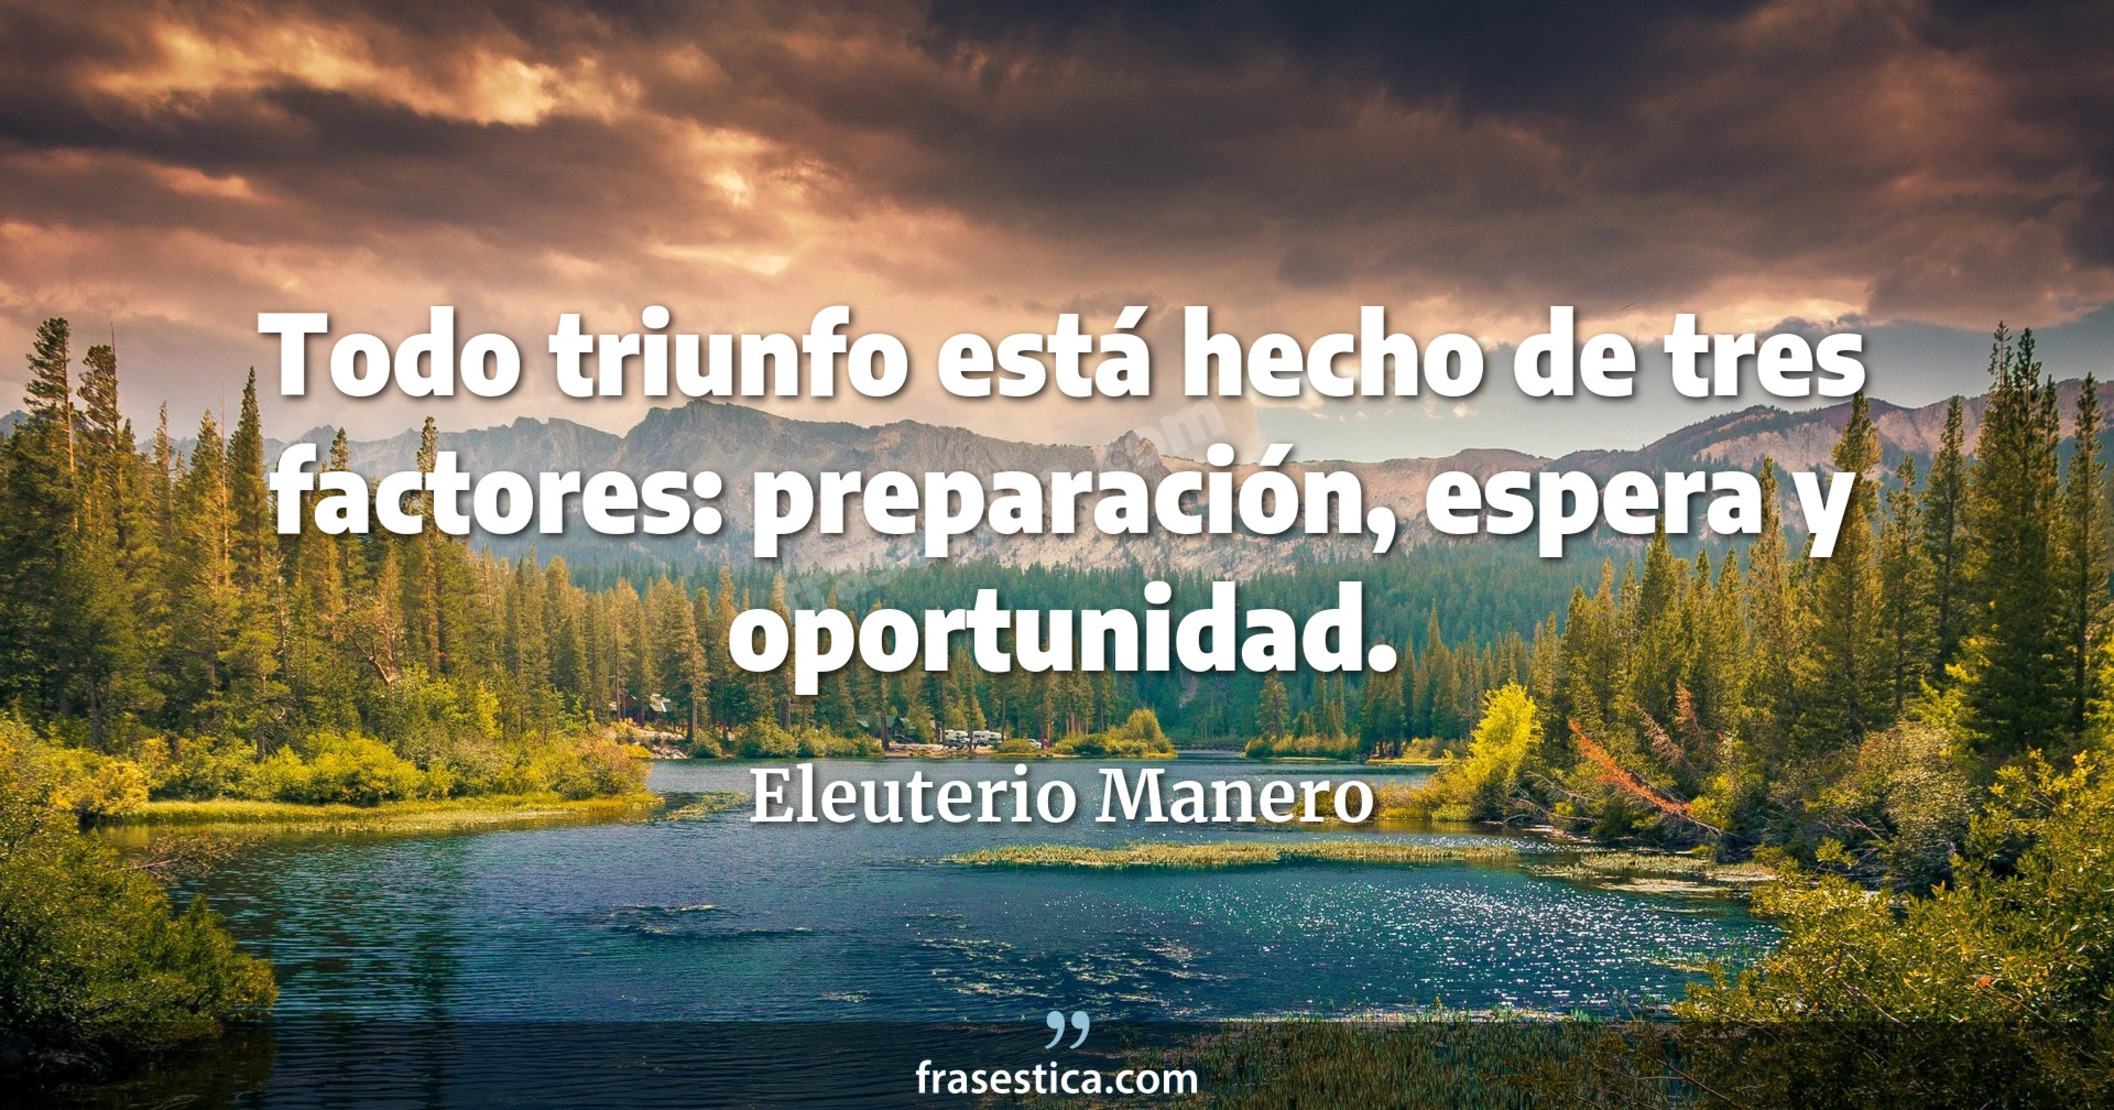 Todo triunfo está hecho de tres factores: preparación, espera y oportunidad. - Eleuterio Manero